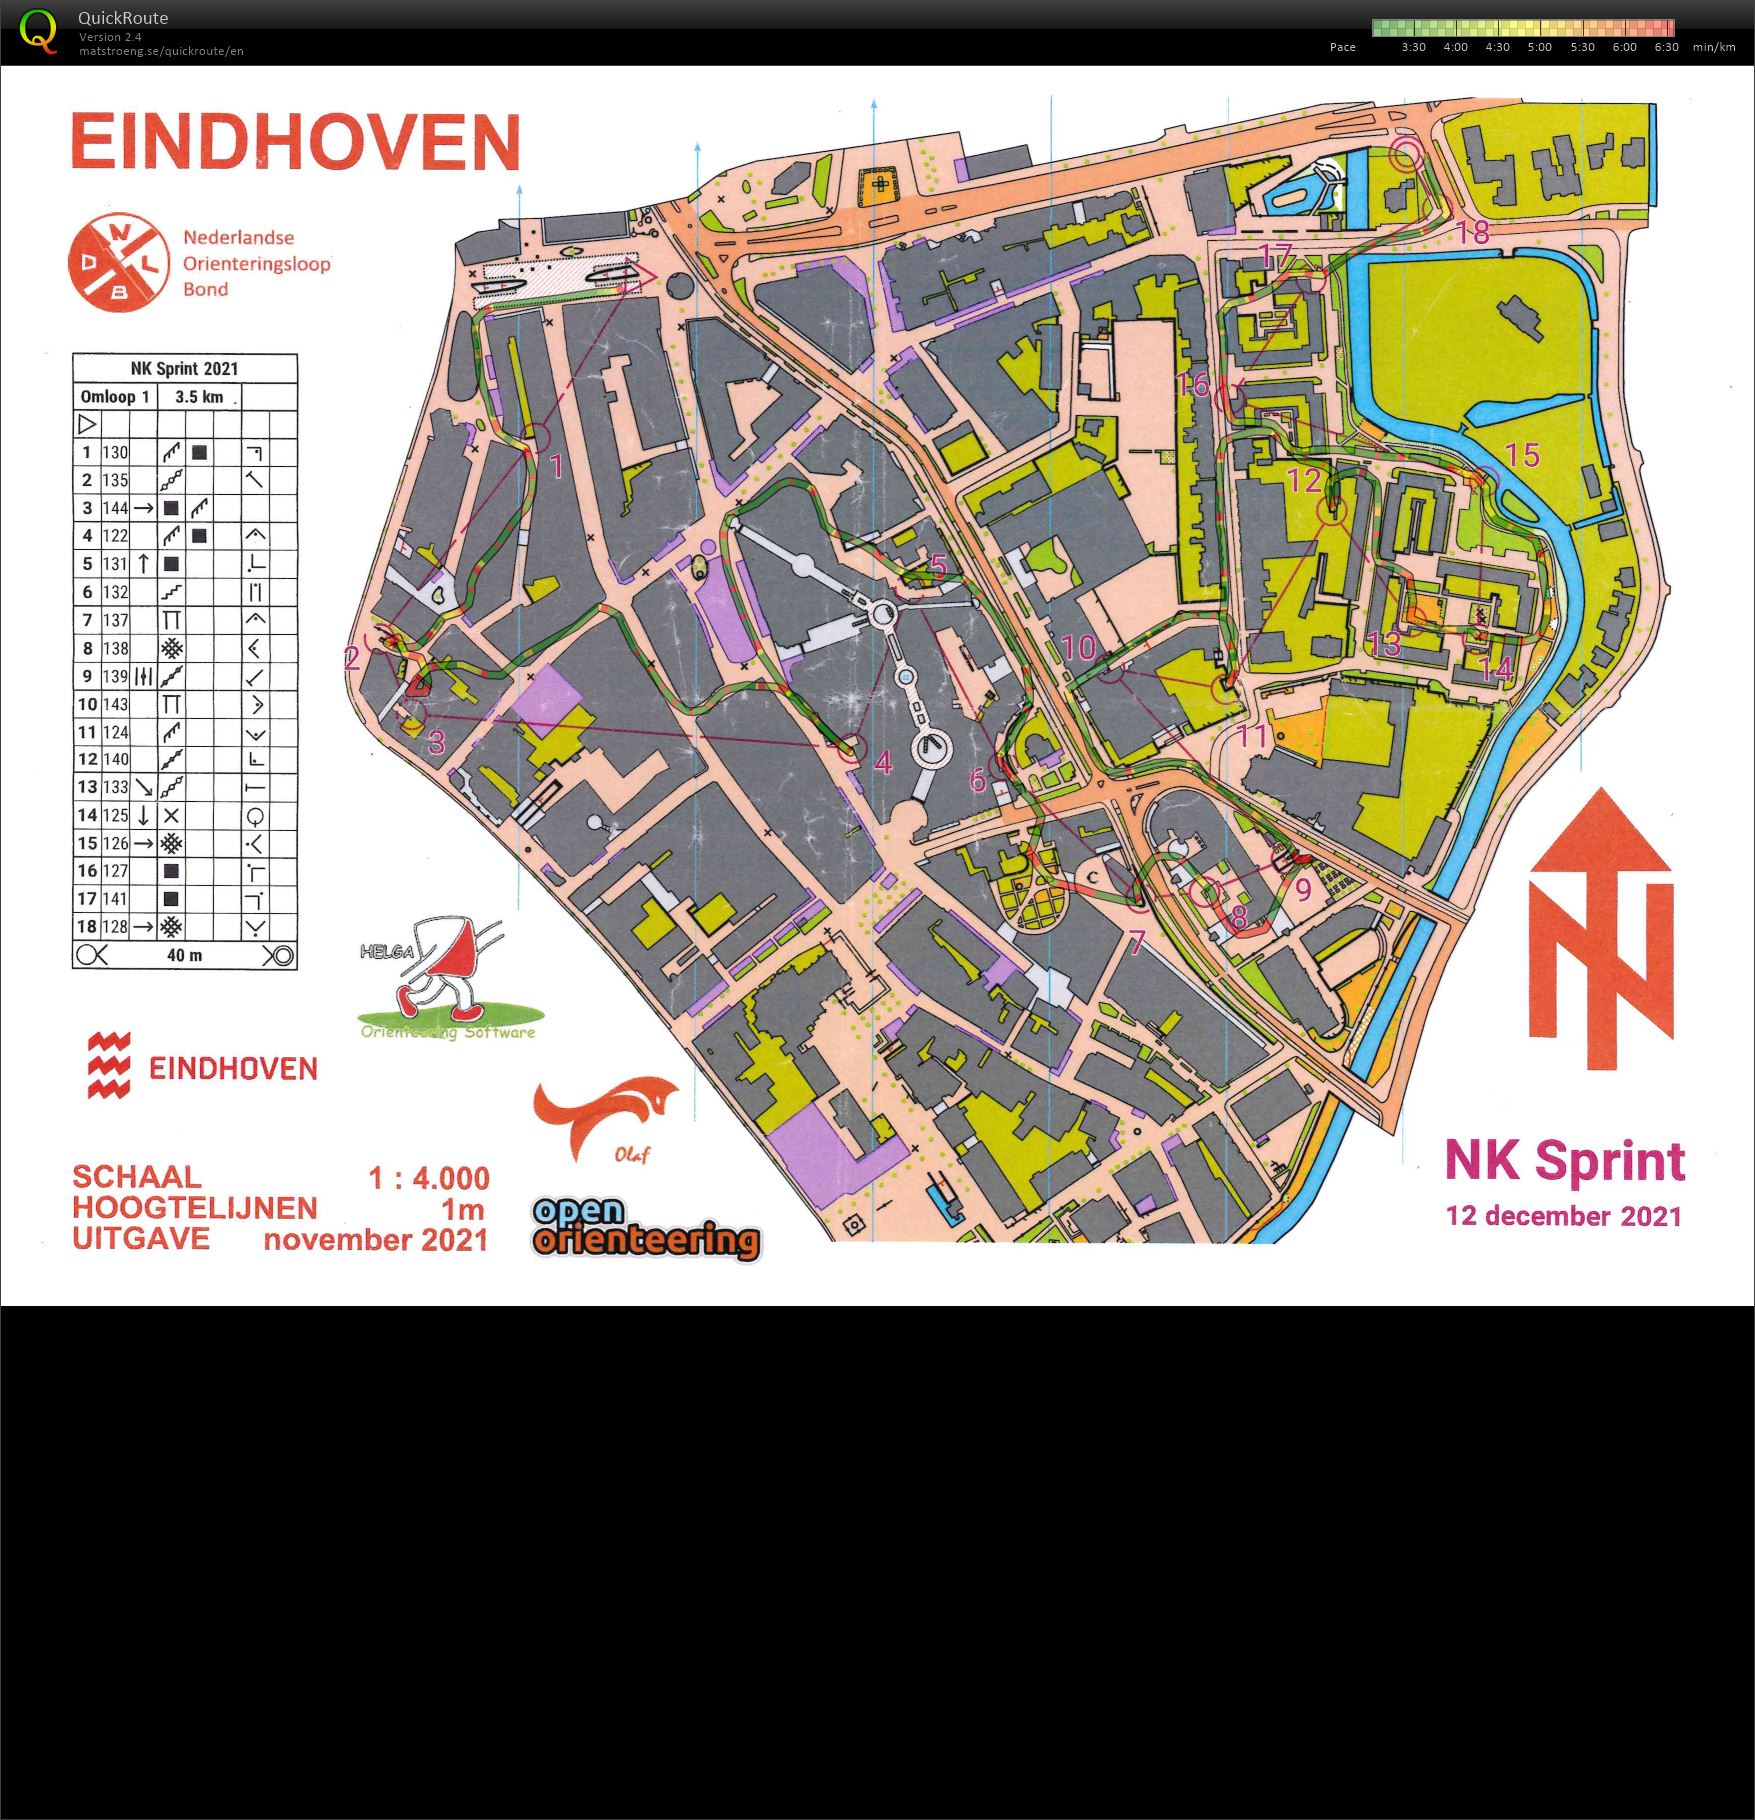 NK Sprint Eindhoven (12/12/2021)